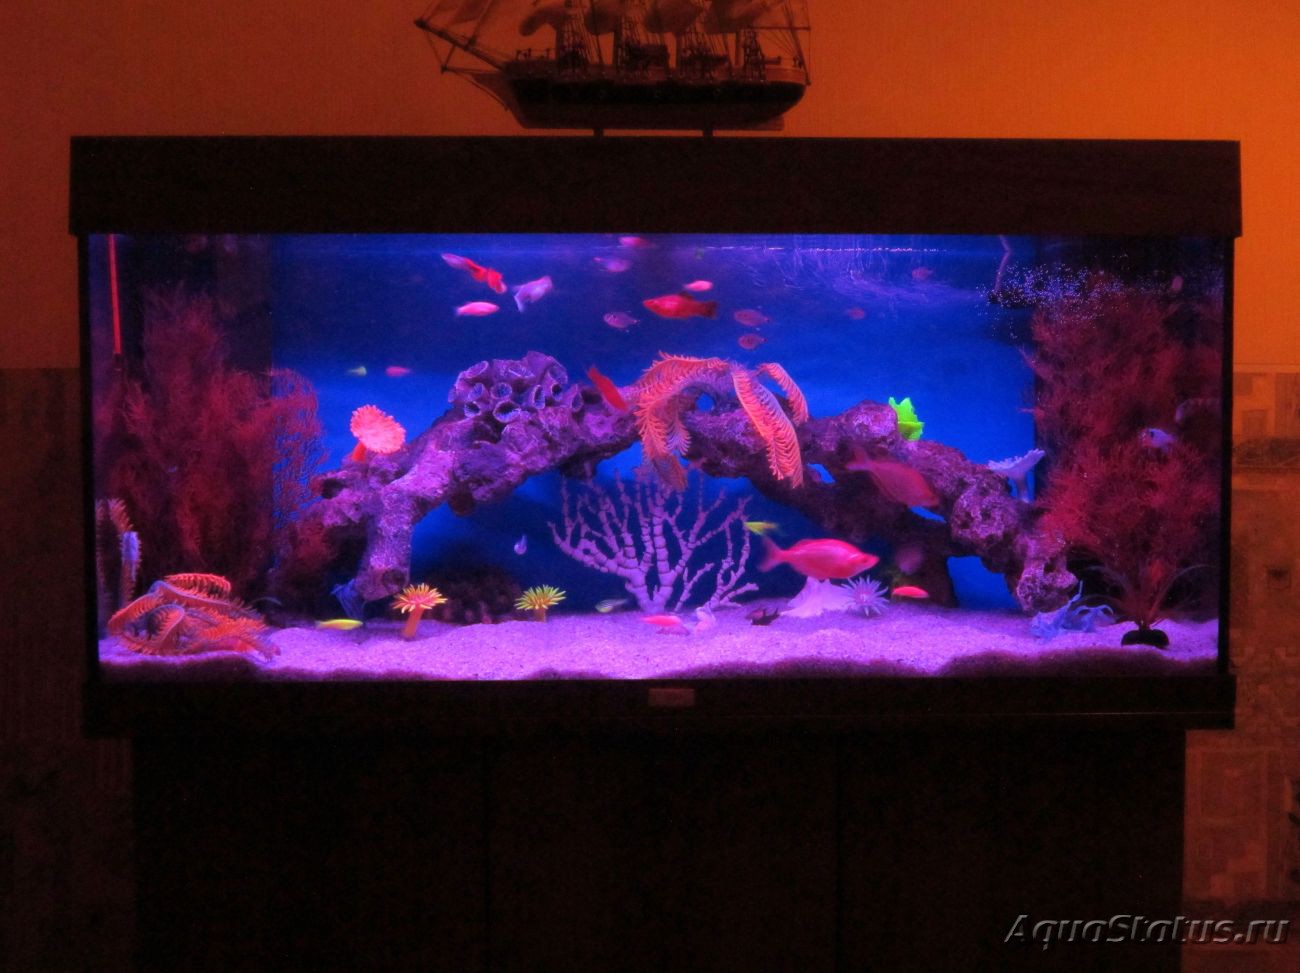 Искусственное освещение аквариума. Виды ламп, правила эксплуатации подсветки